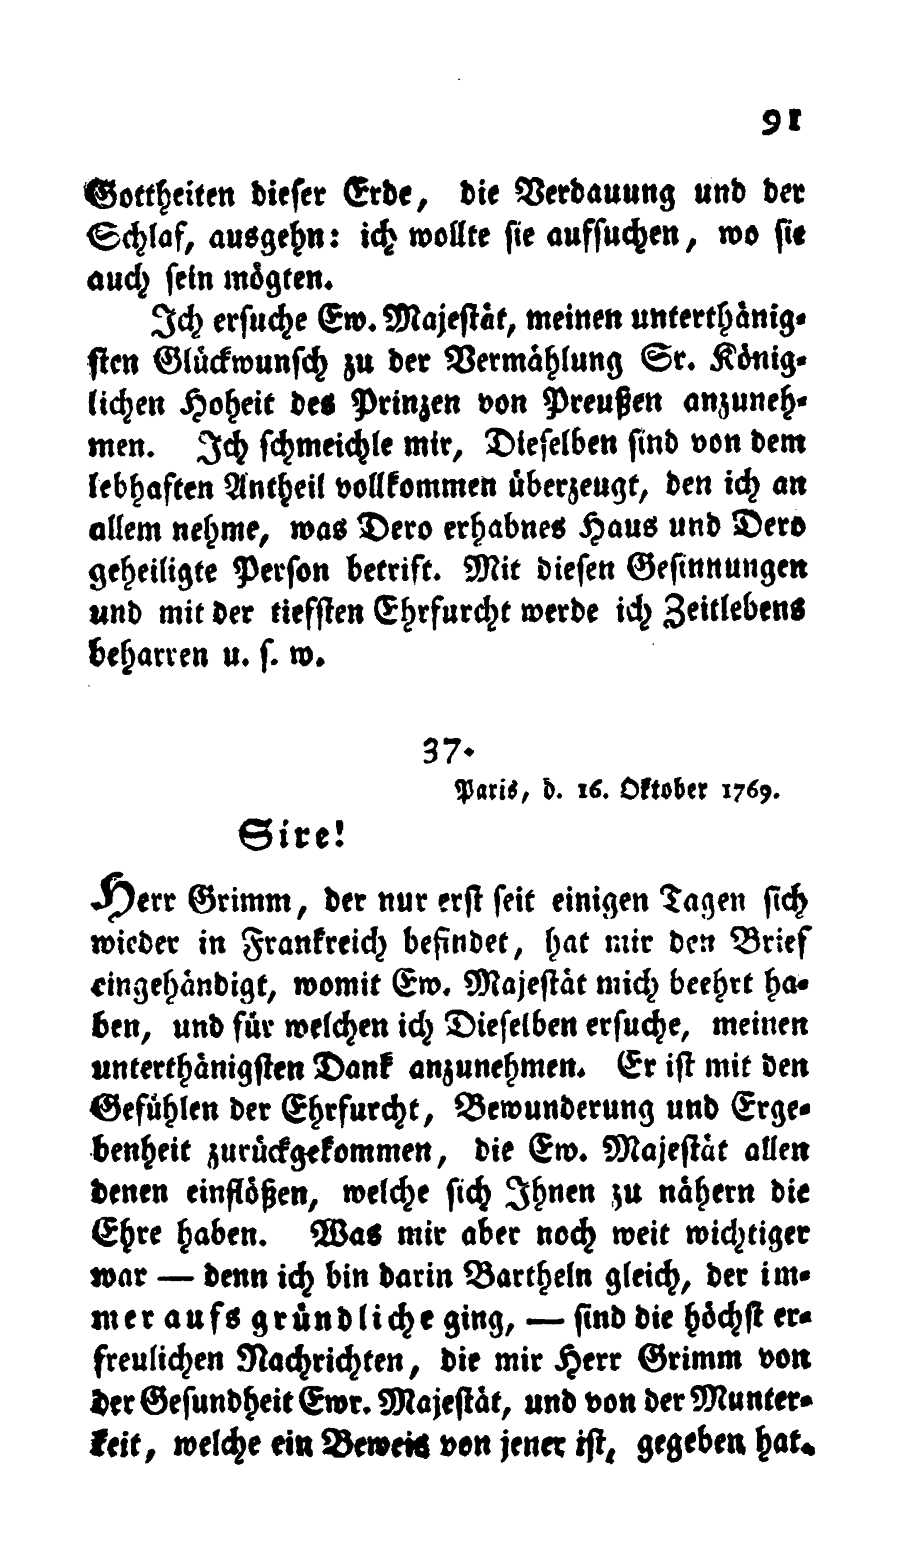 S. 91, Obj. 2